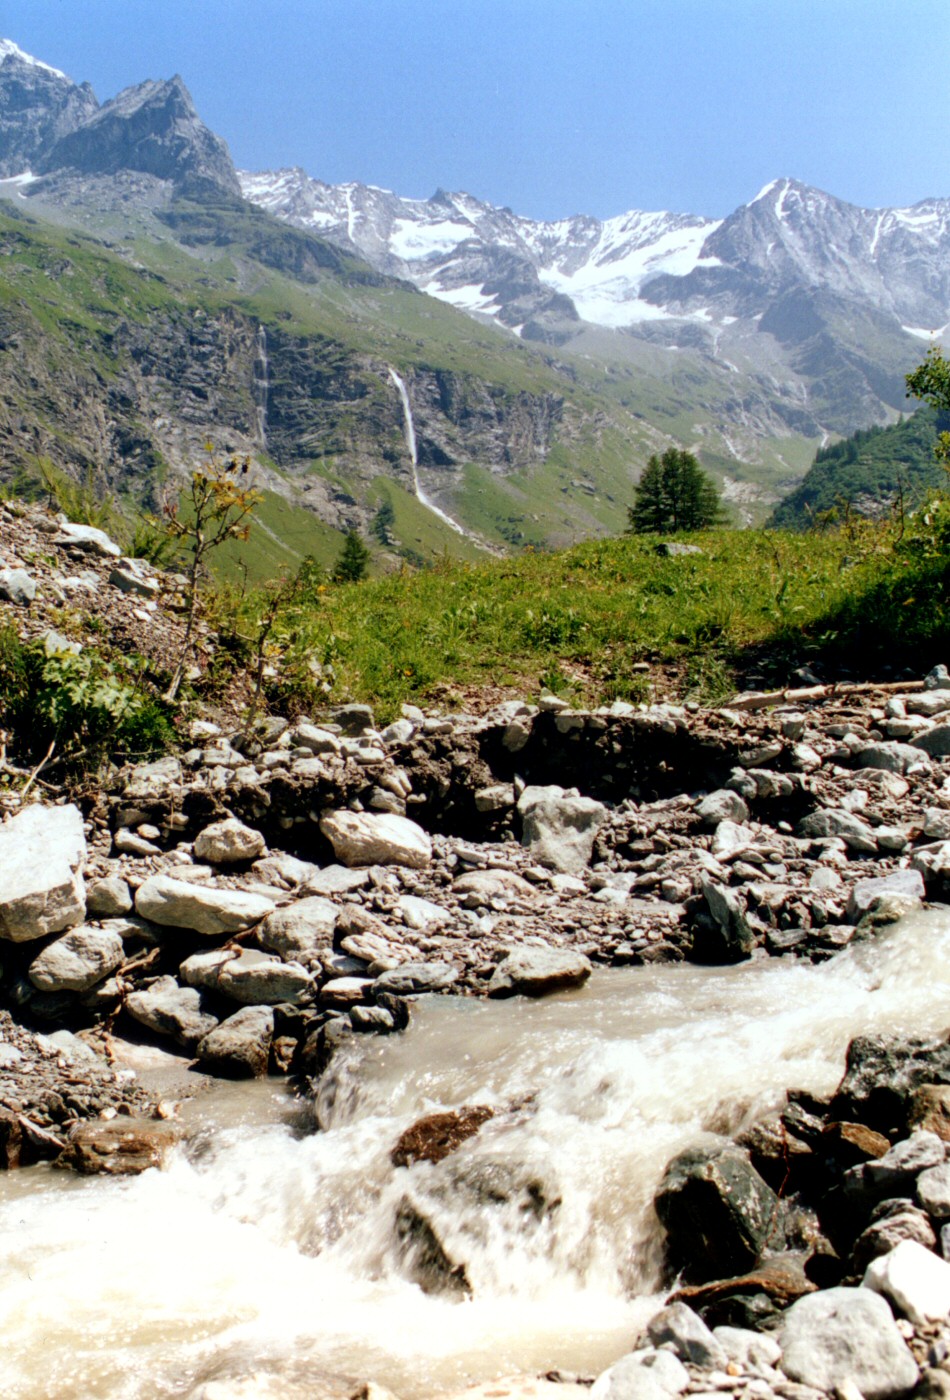 Torrent de montagne avec deux cascades dans le lointain